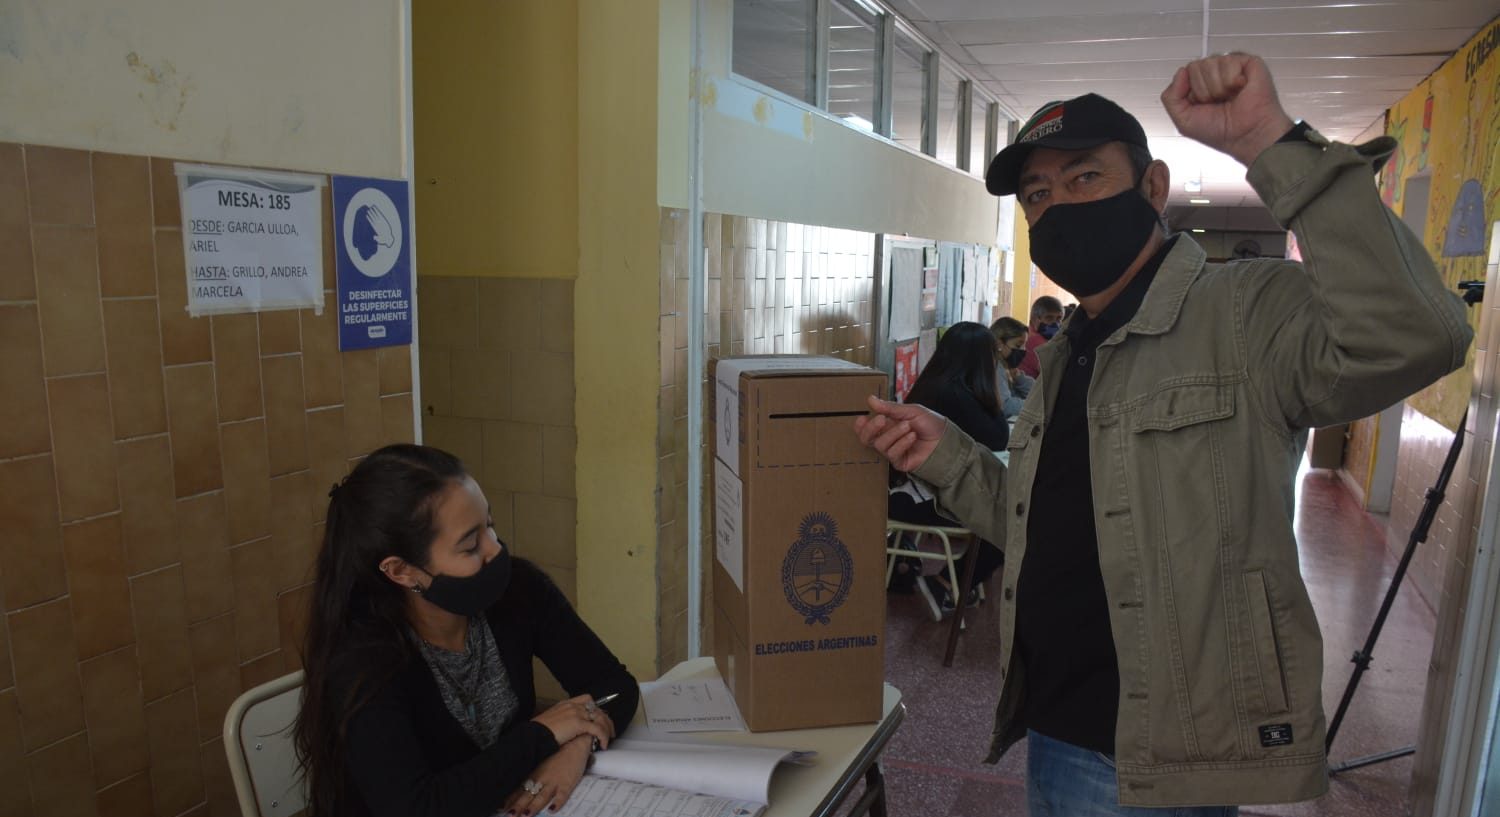 Raúl Godoy emitió su voto en una escuela de Alta barda. Foto: Yamil Regules